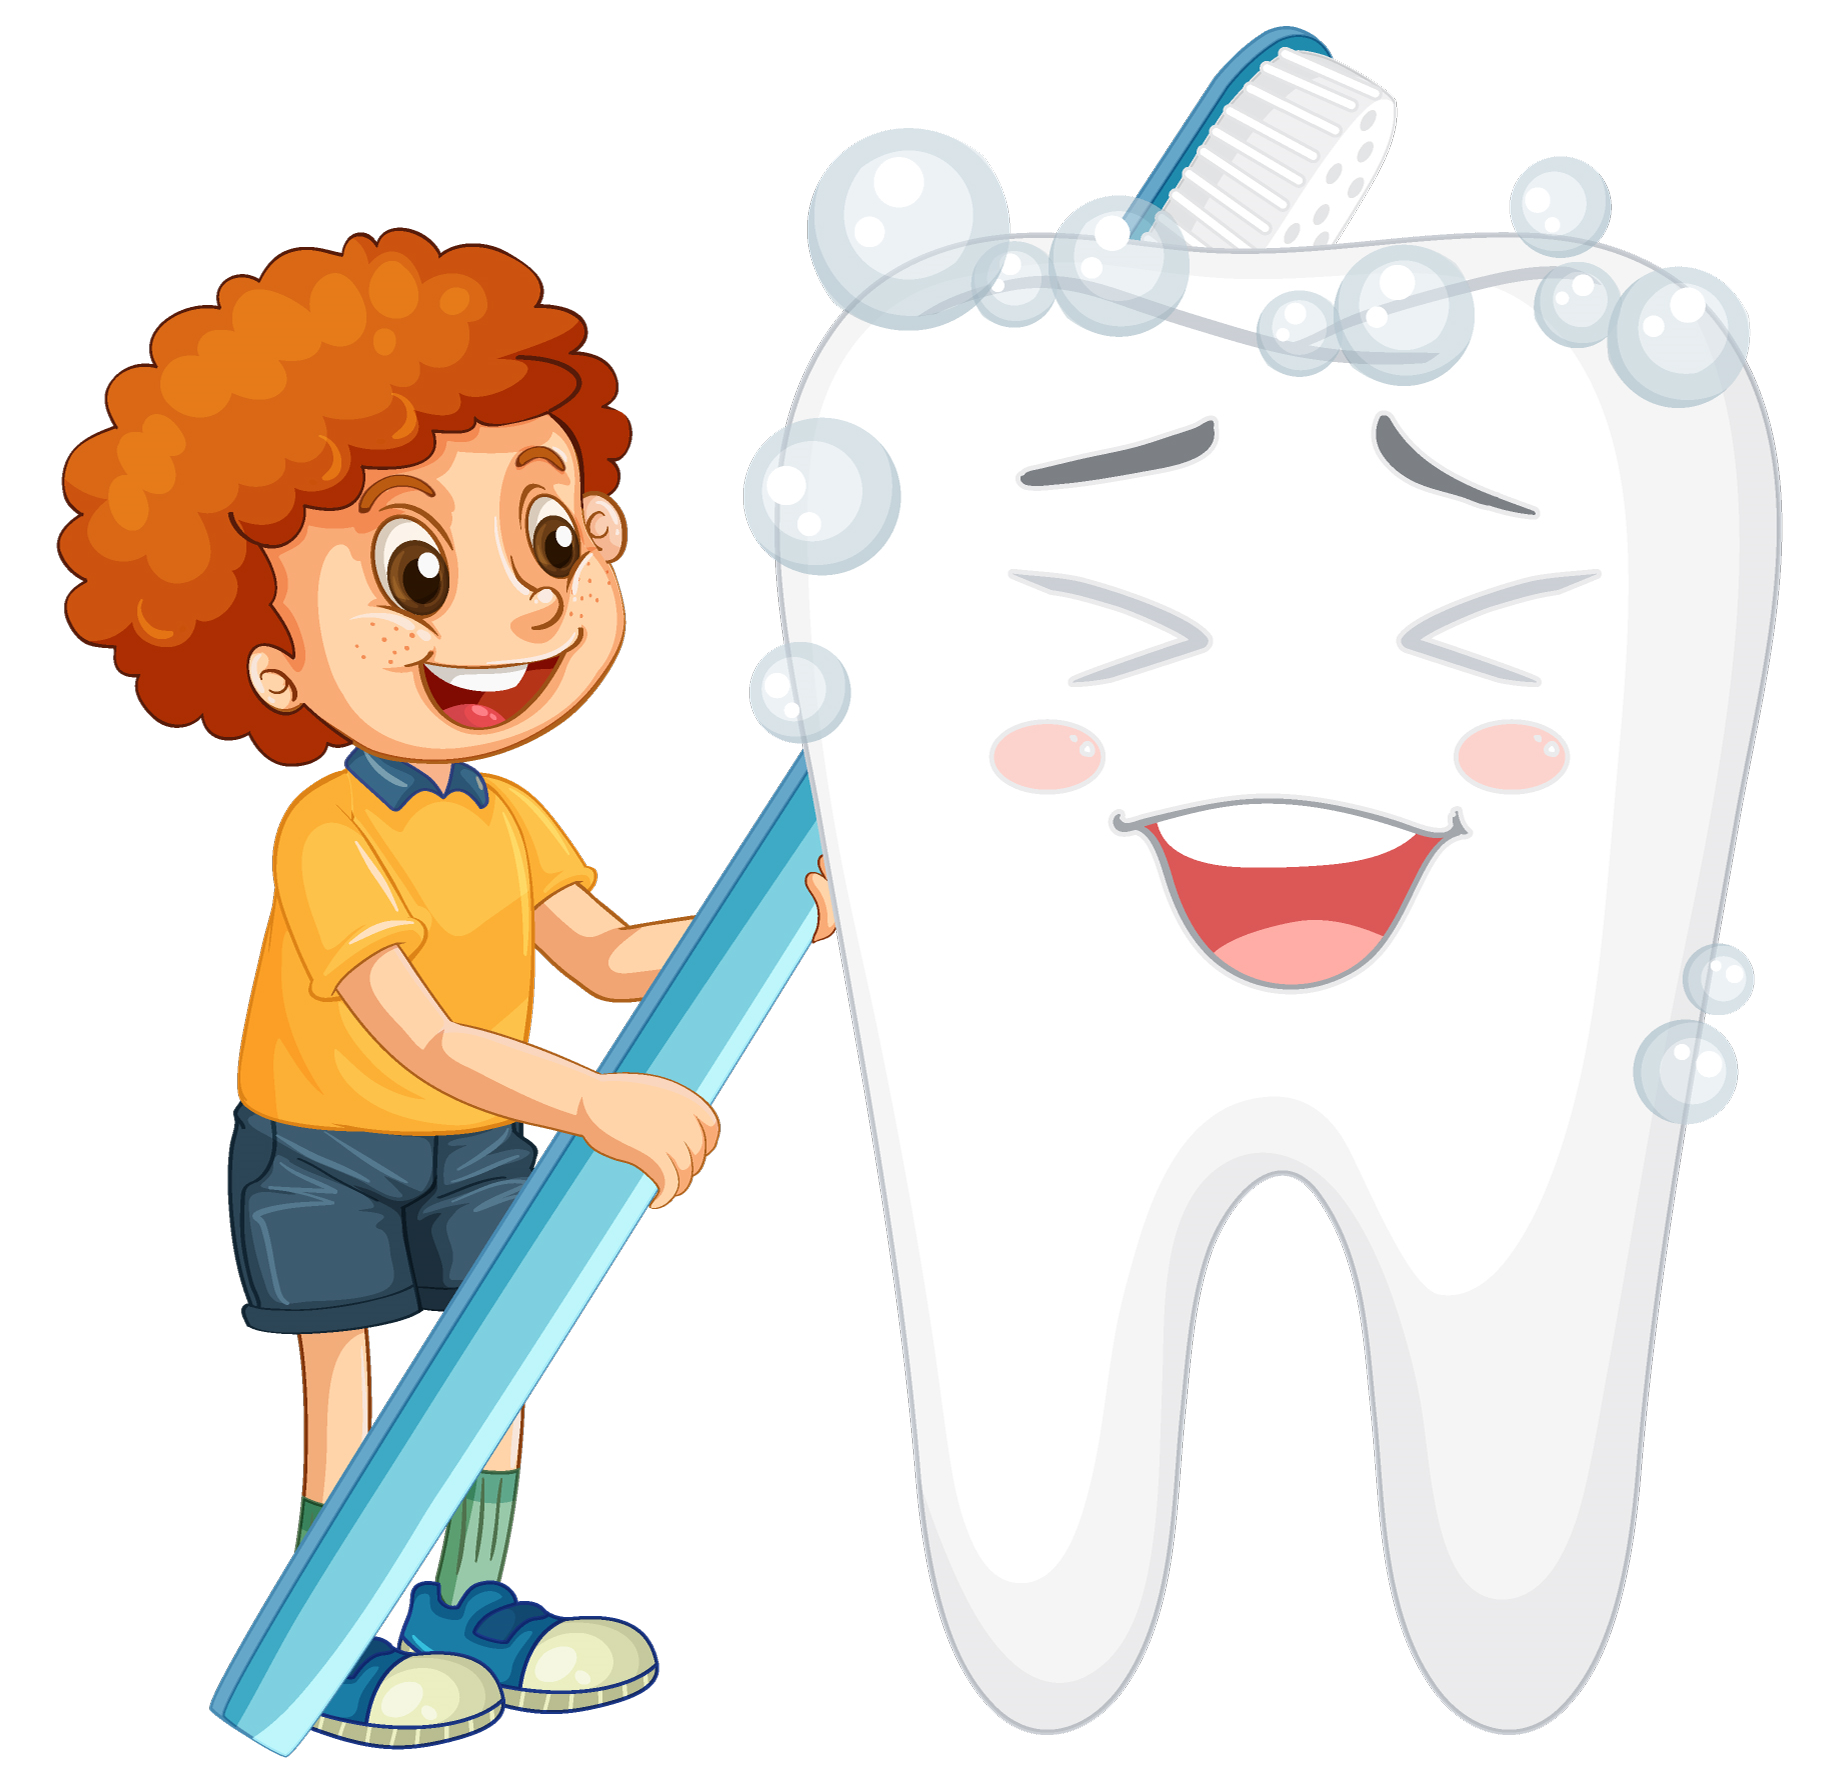 חשיבות טיפולי שיניים לילדים